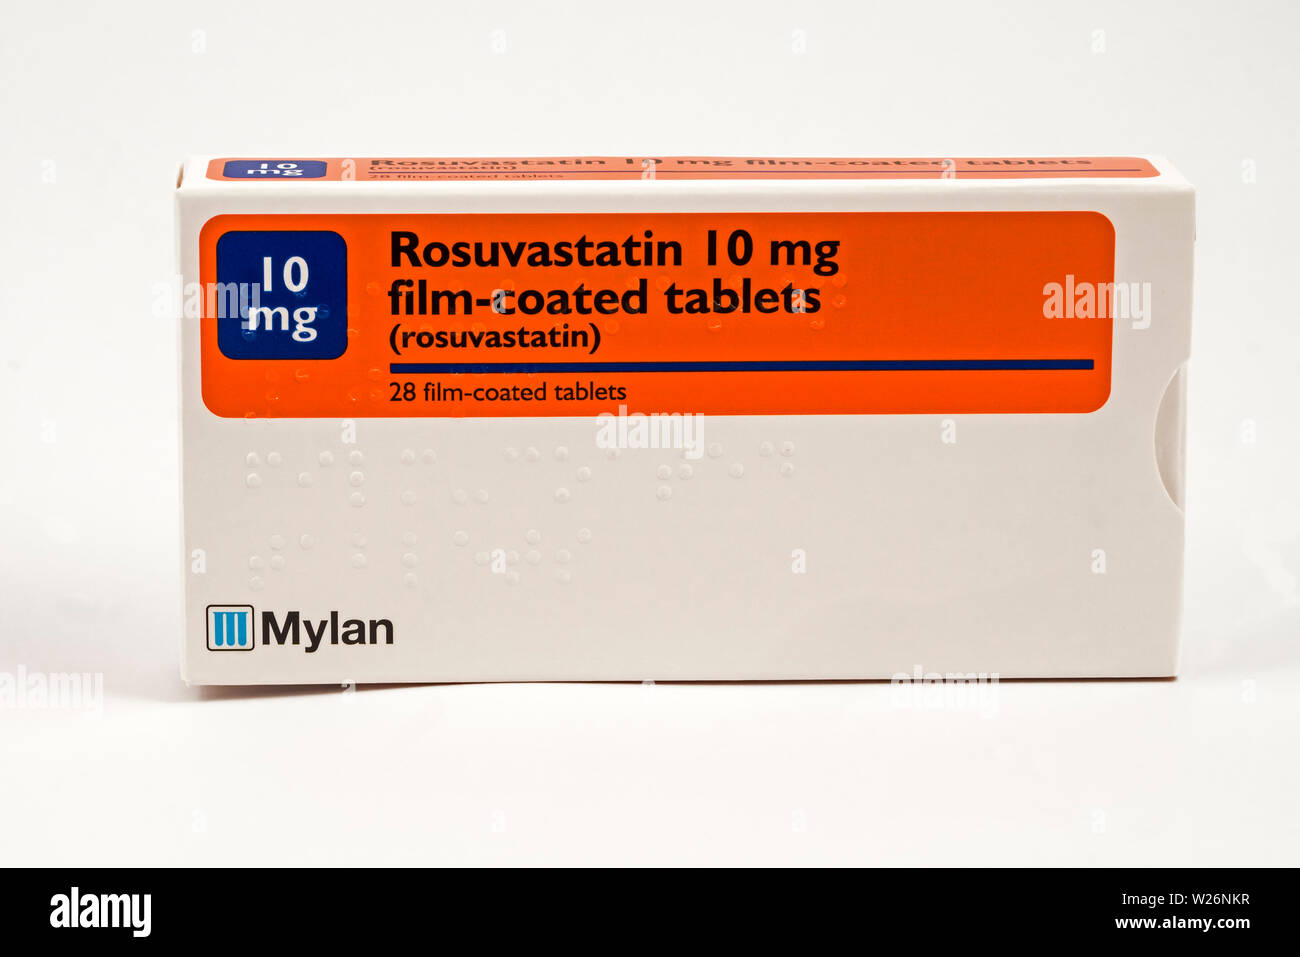 La rosuvastatina, una estatina medicamento para bajar el colesterol. También se vende bajo el nombre comercial de Crestor. Foto de stock